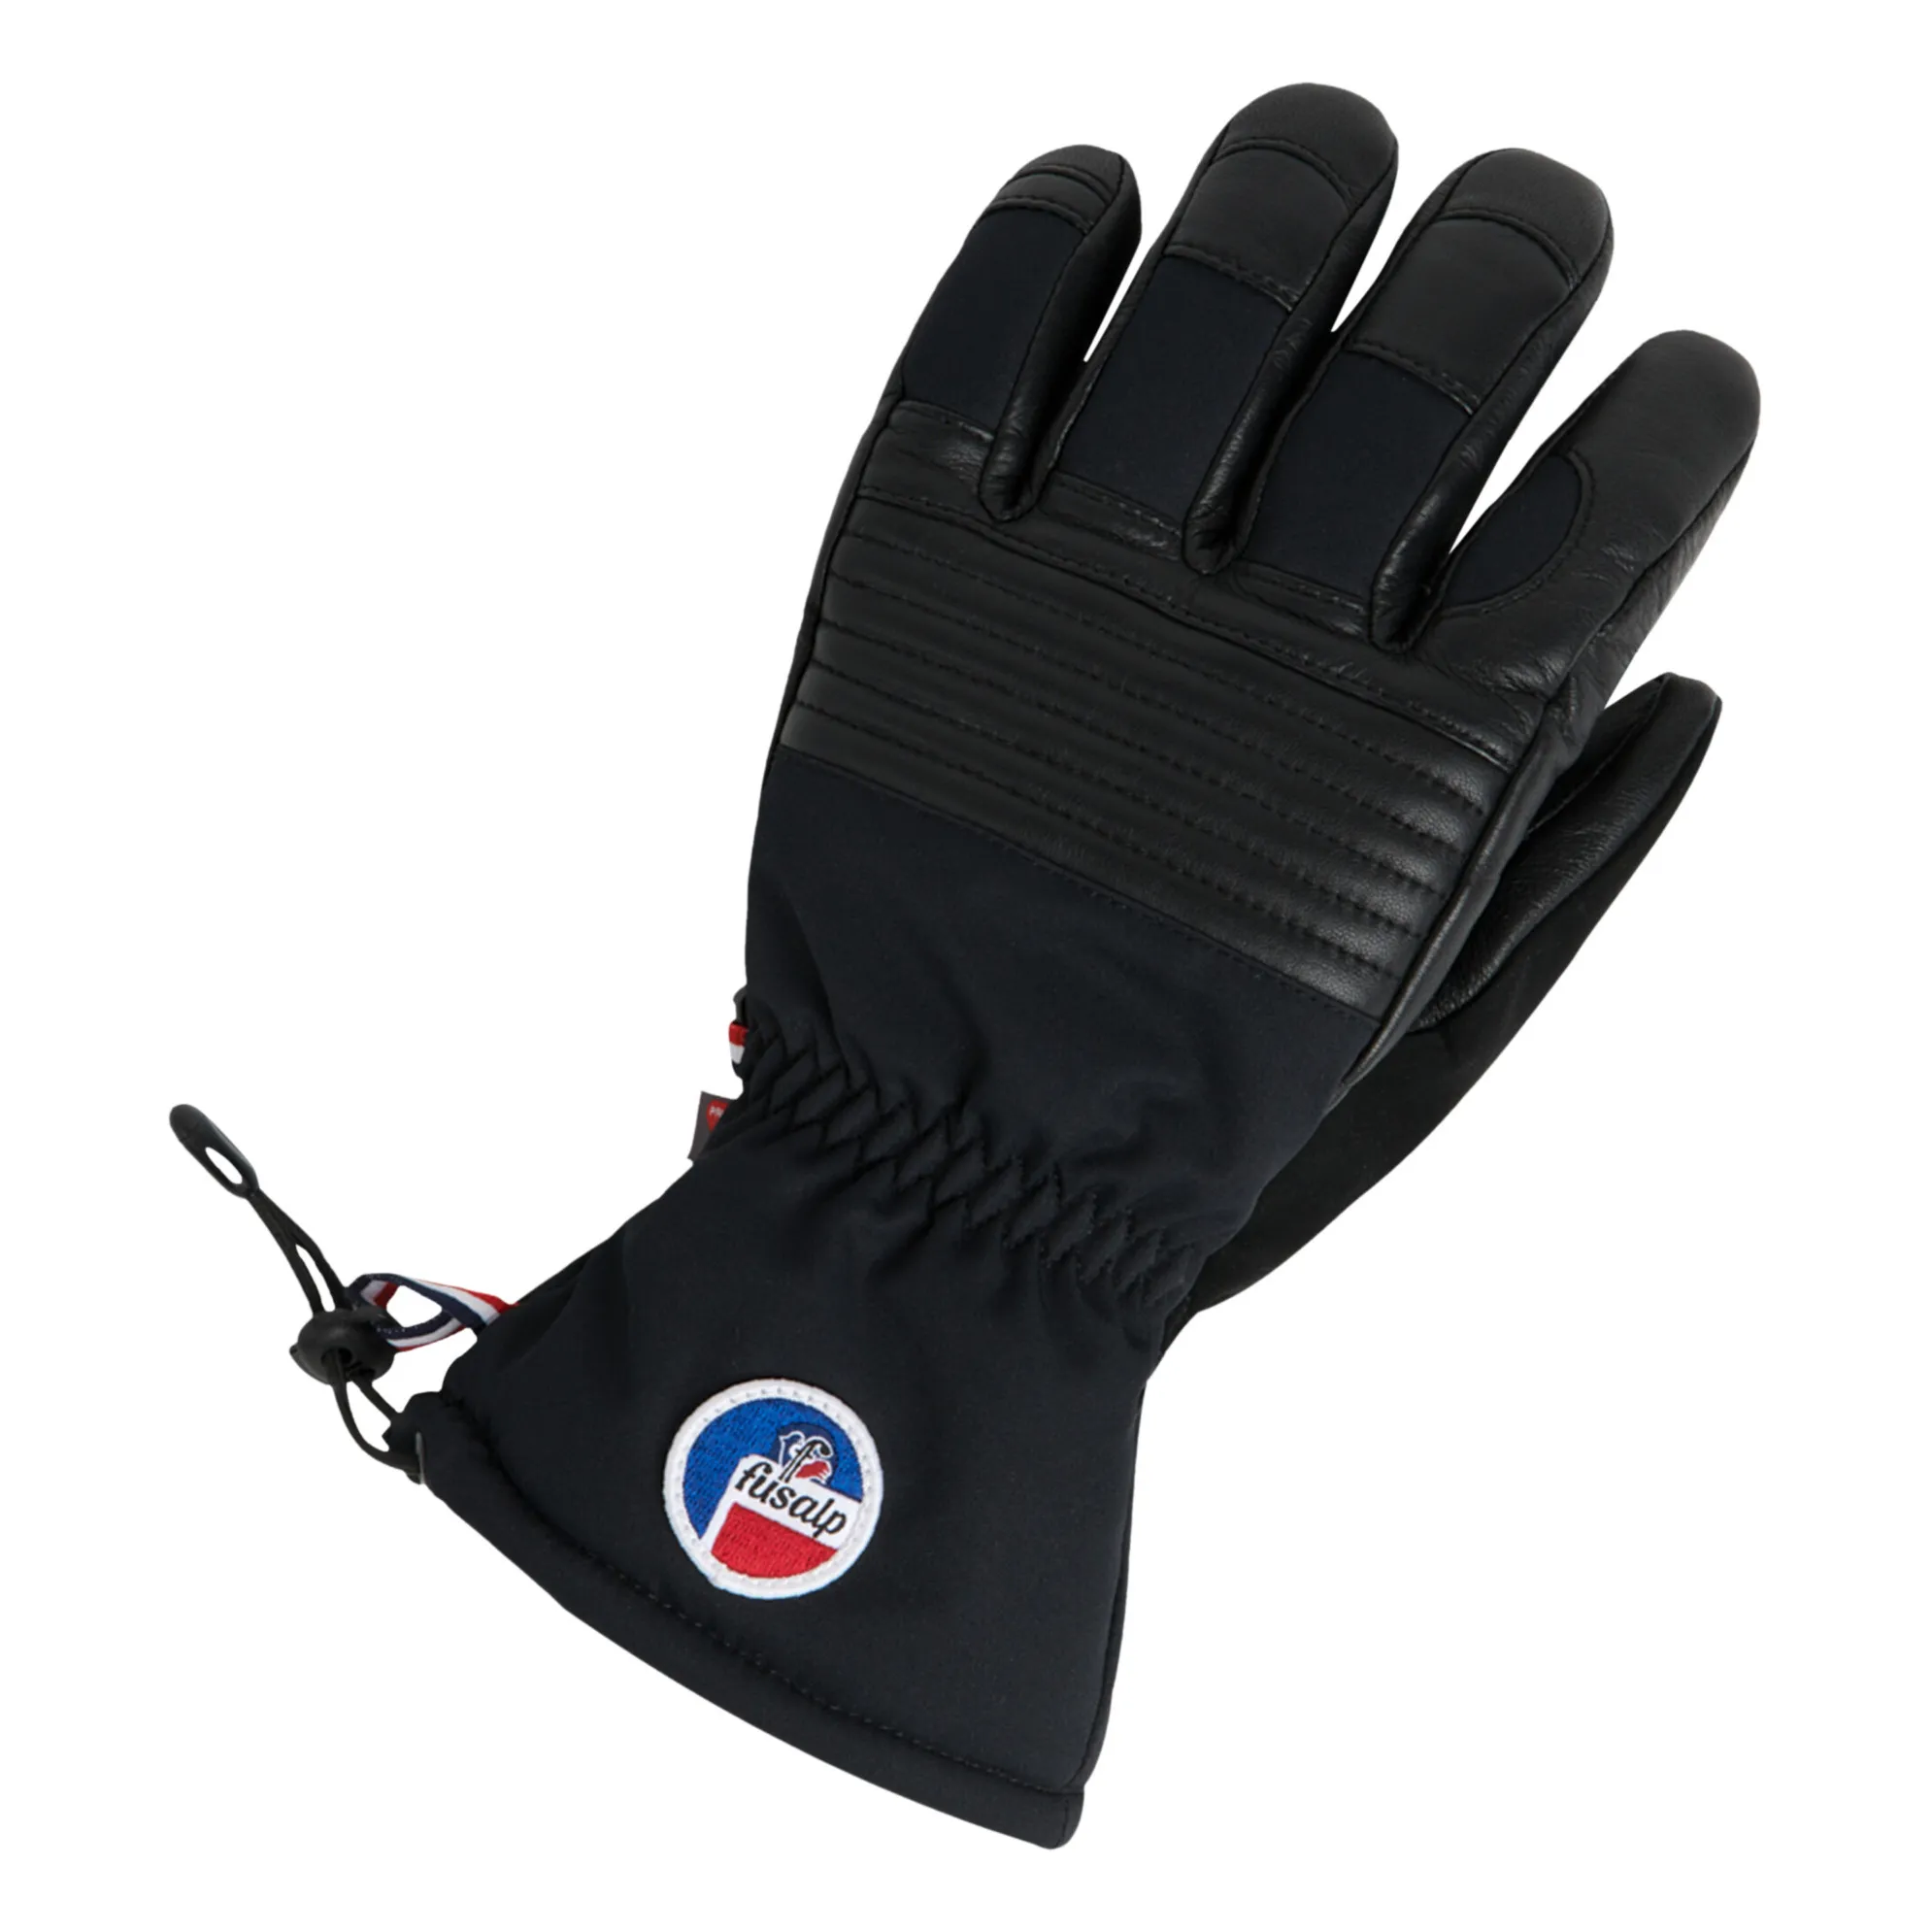 Fusalp - Albinen gloves - Black